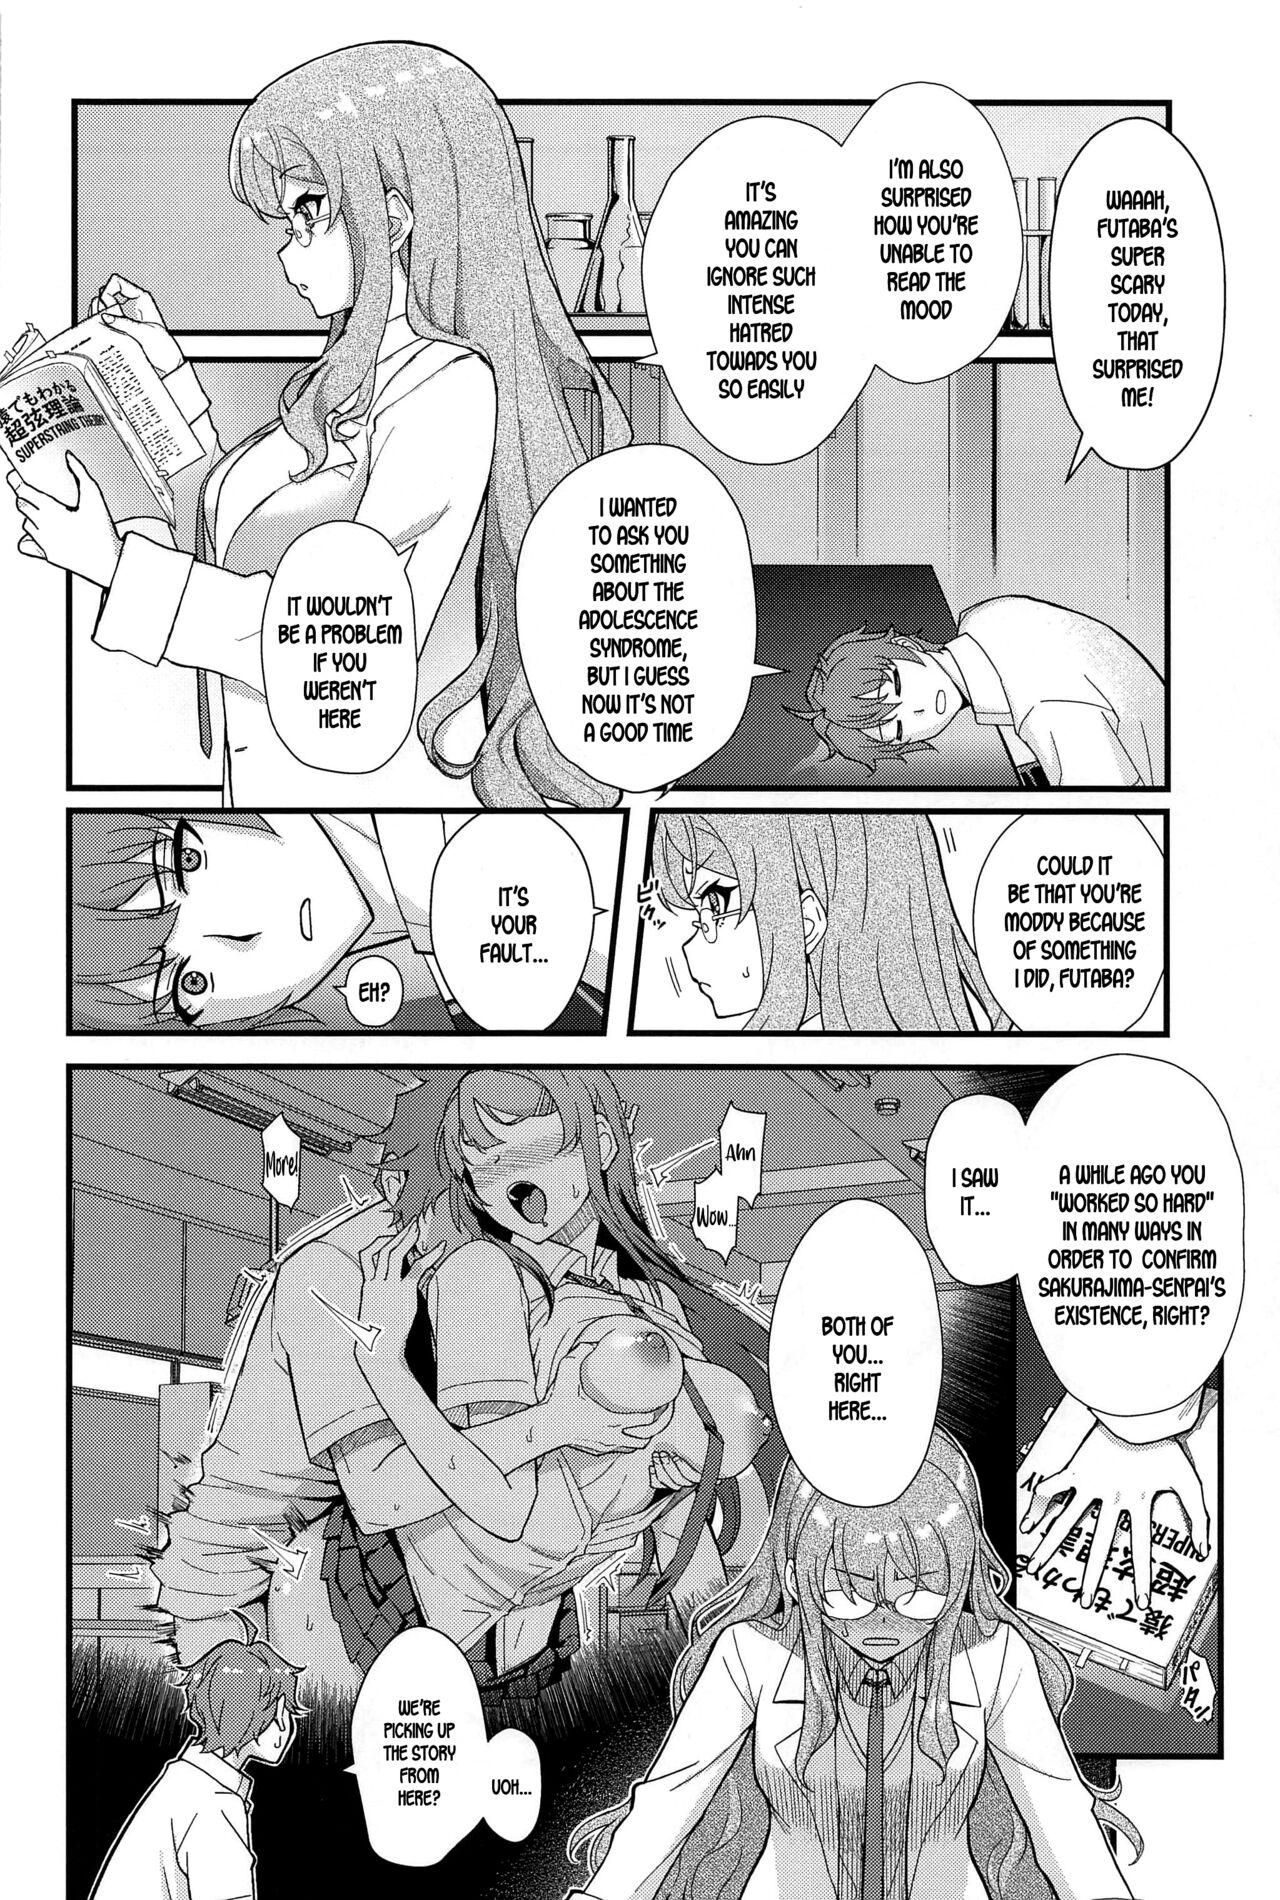 Oil MULTI REALITY - Seishun buta yarou wa bunny girl senpai no yume o minai Juggs - Page 3